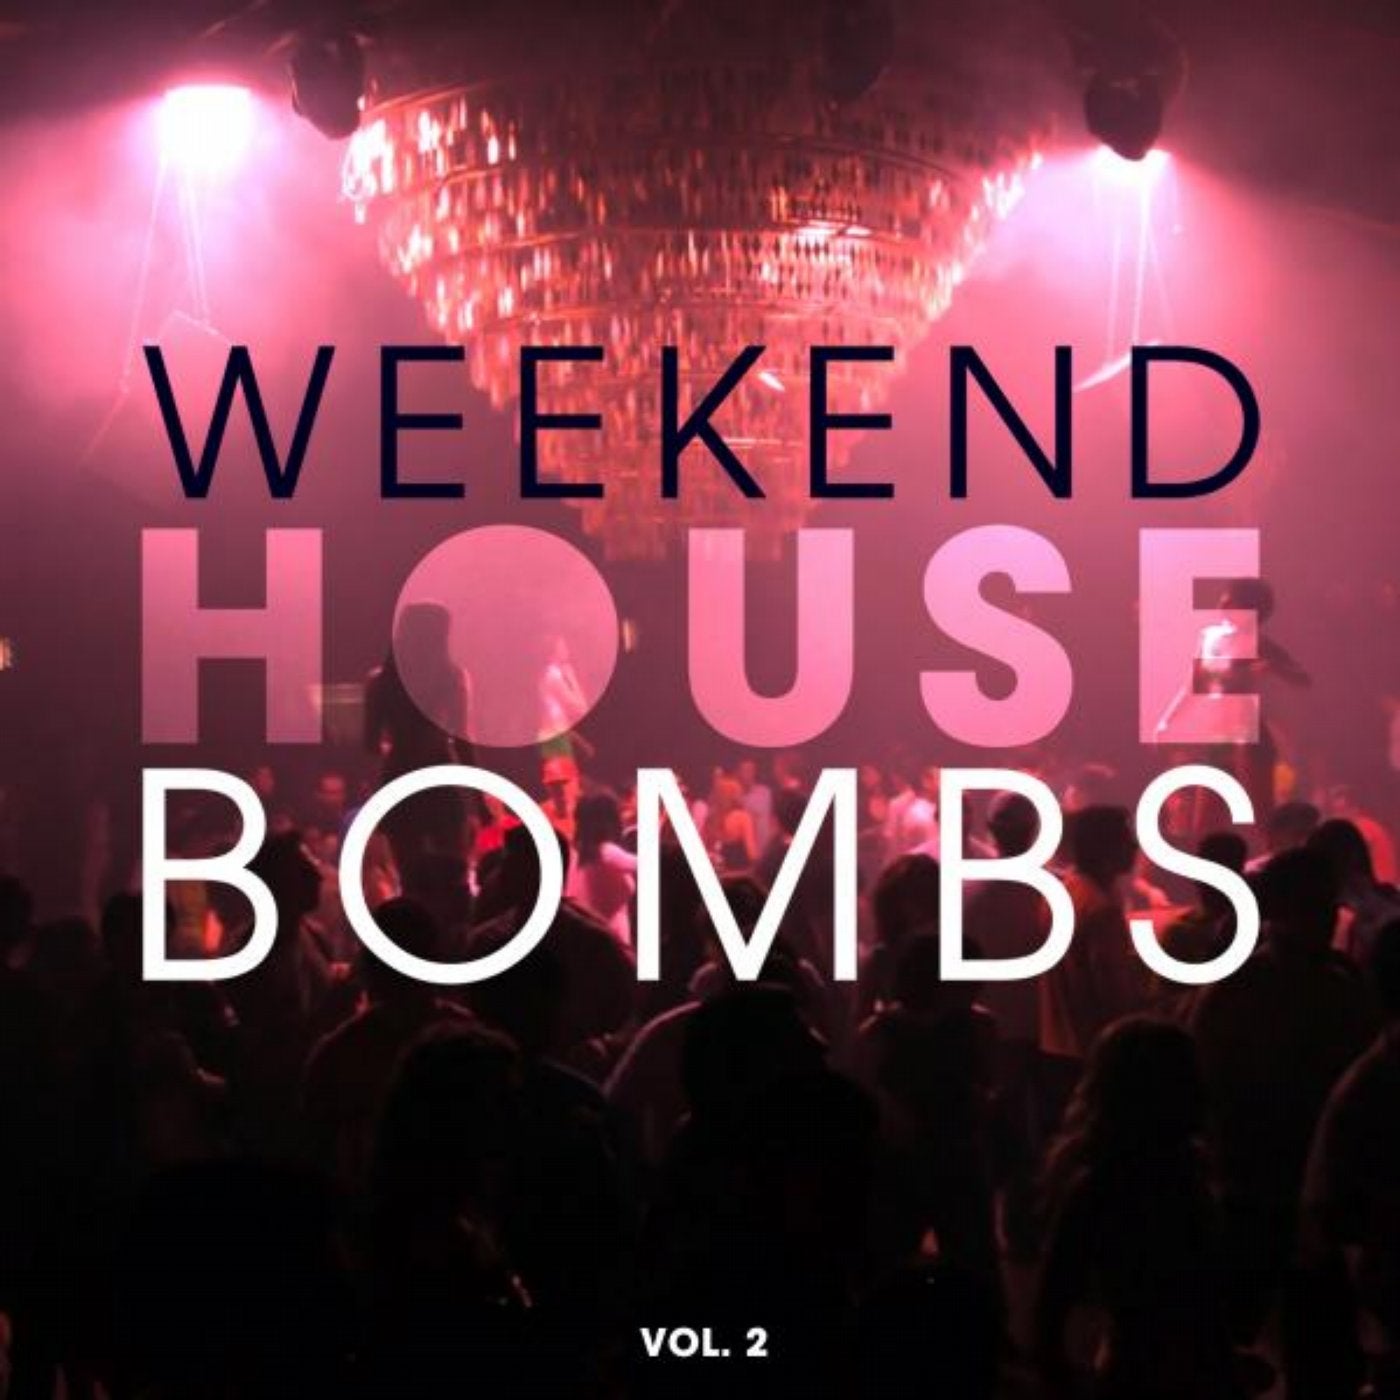 Weekend House Bombs, Vol. 2